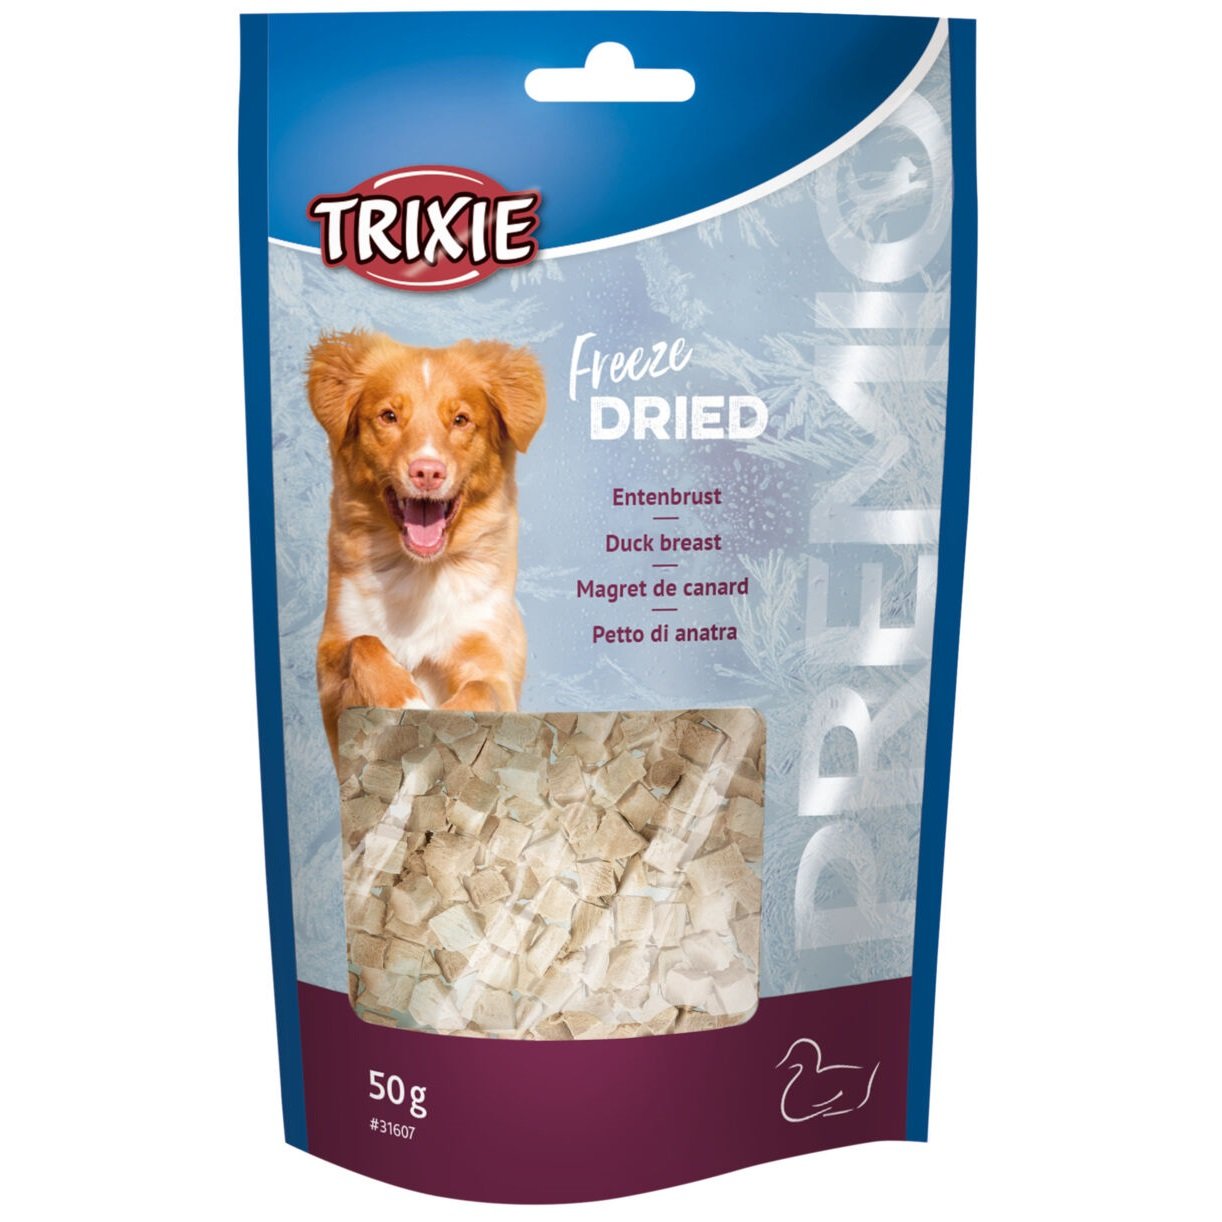 Ласощі для собак Trixie Premio Freeze Dried, качина грудка, 50 г (31607) - фото 1